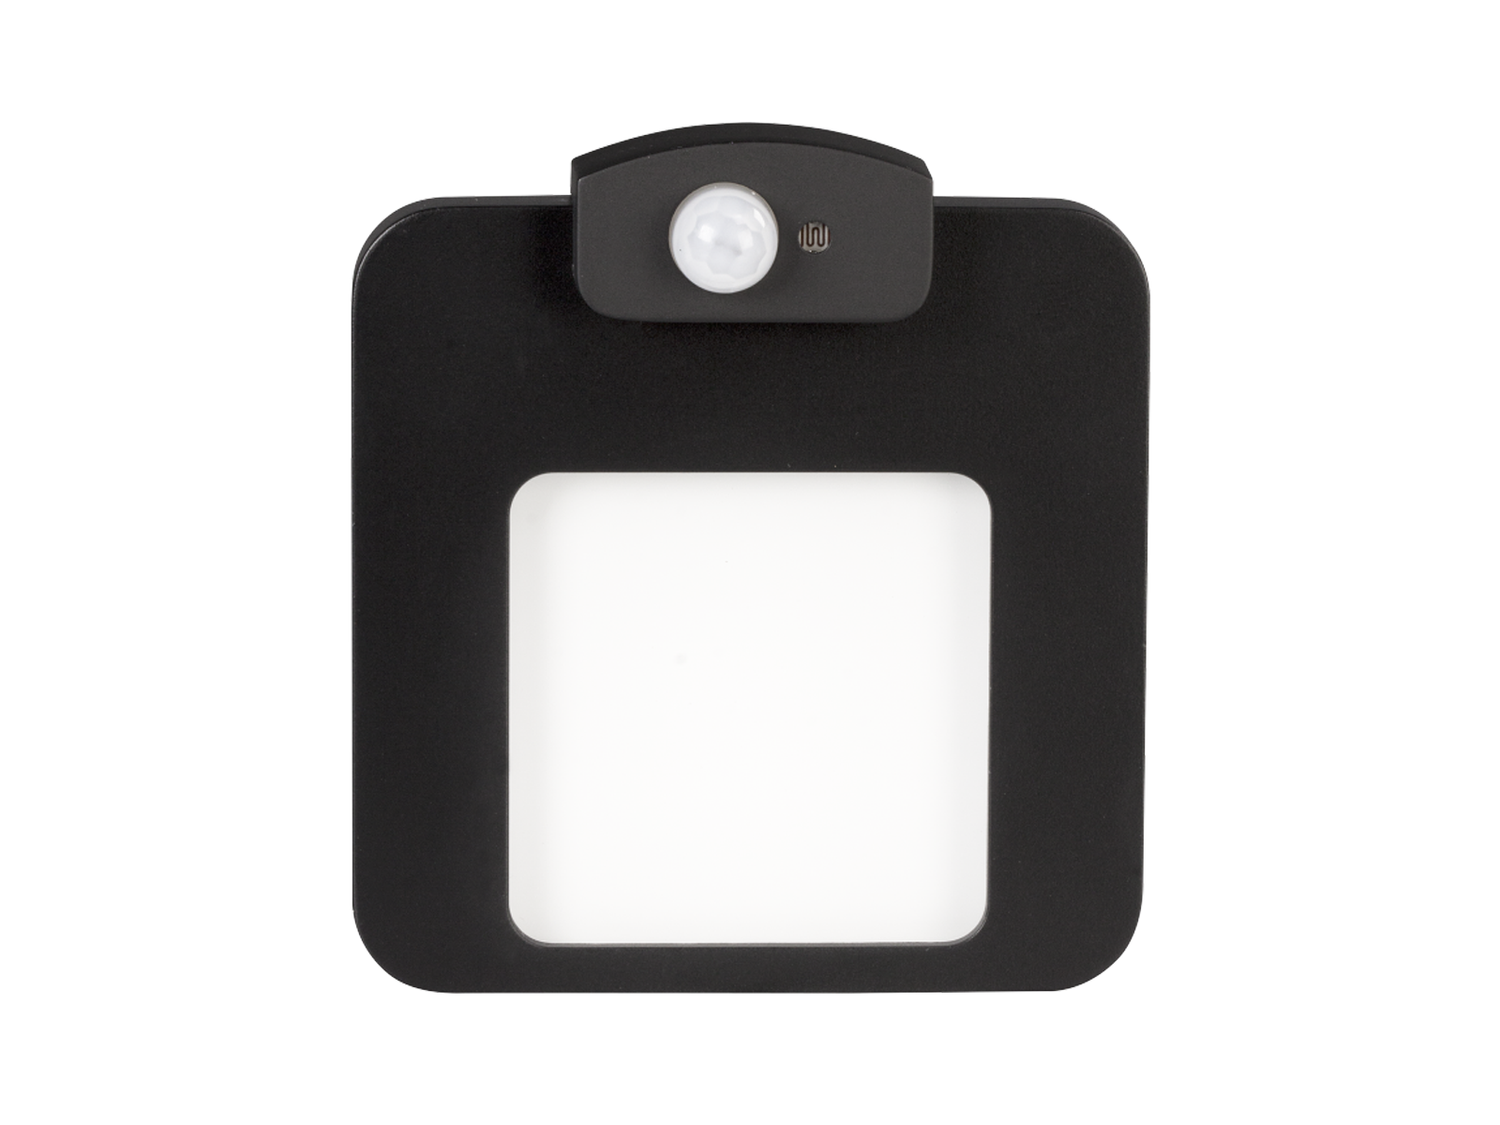 Svítidlo LED s čidlem do krabice LEDIX MOZA 14V DC, černá, studená bílá, IP20